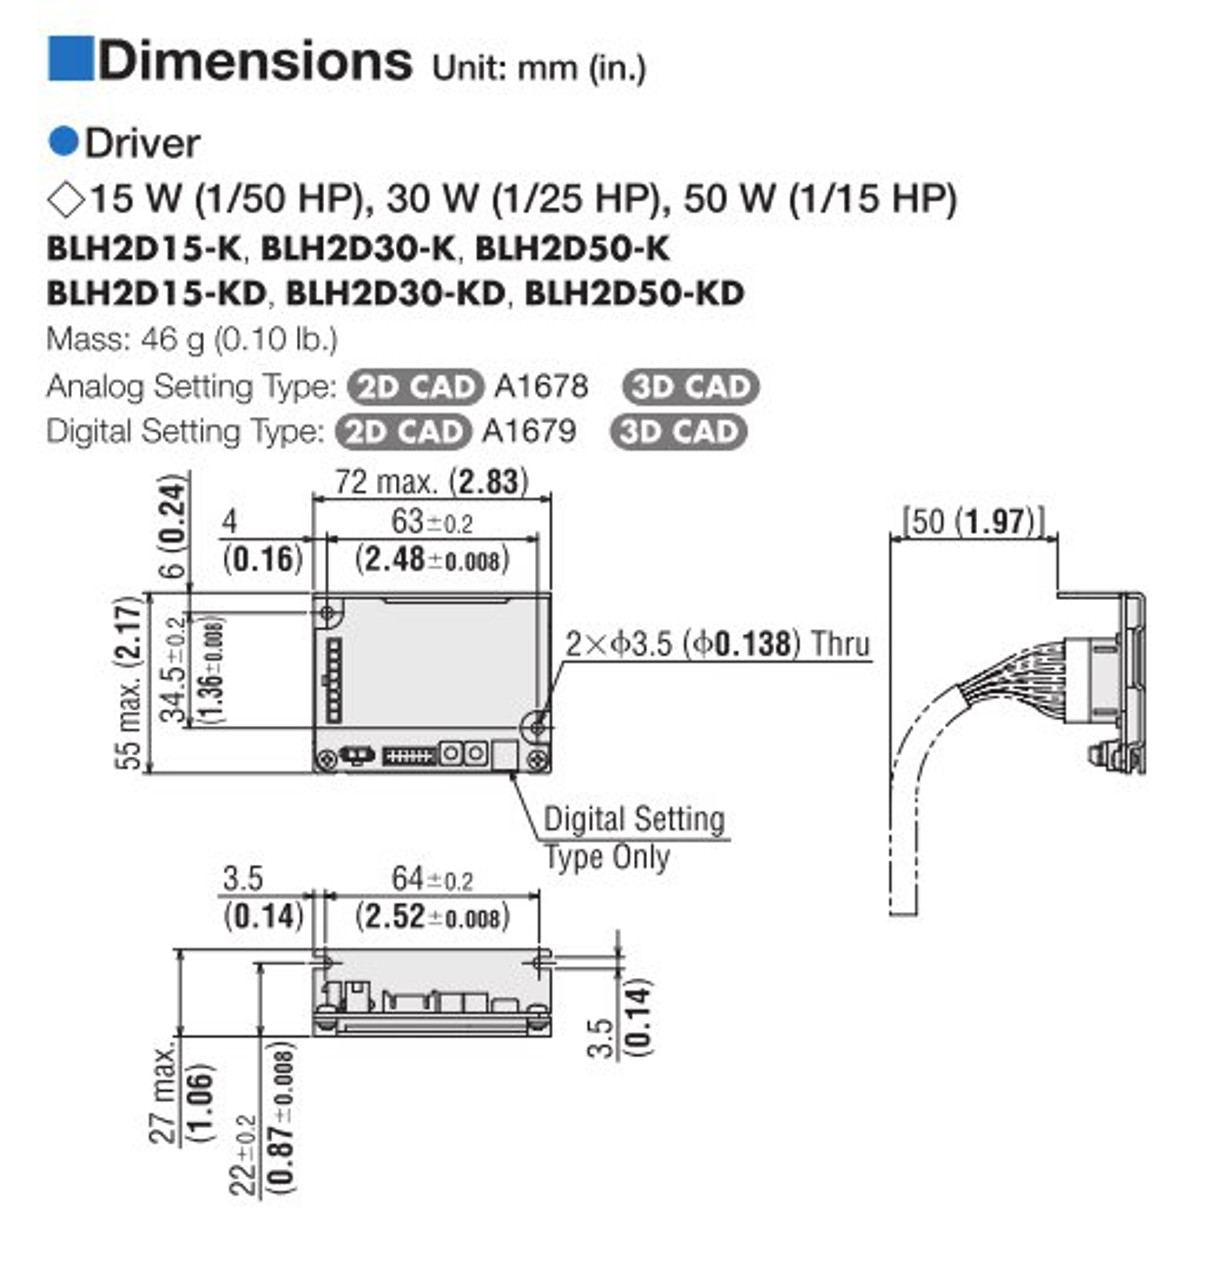 BLHM015K-5 / BLH2D15-K - Dimensions